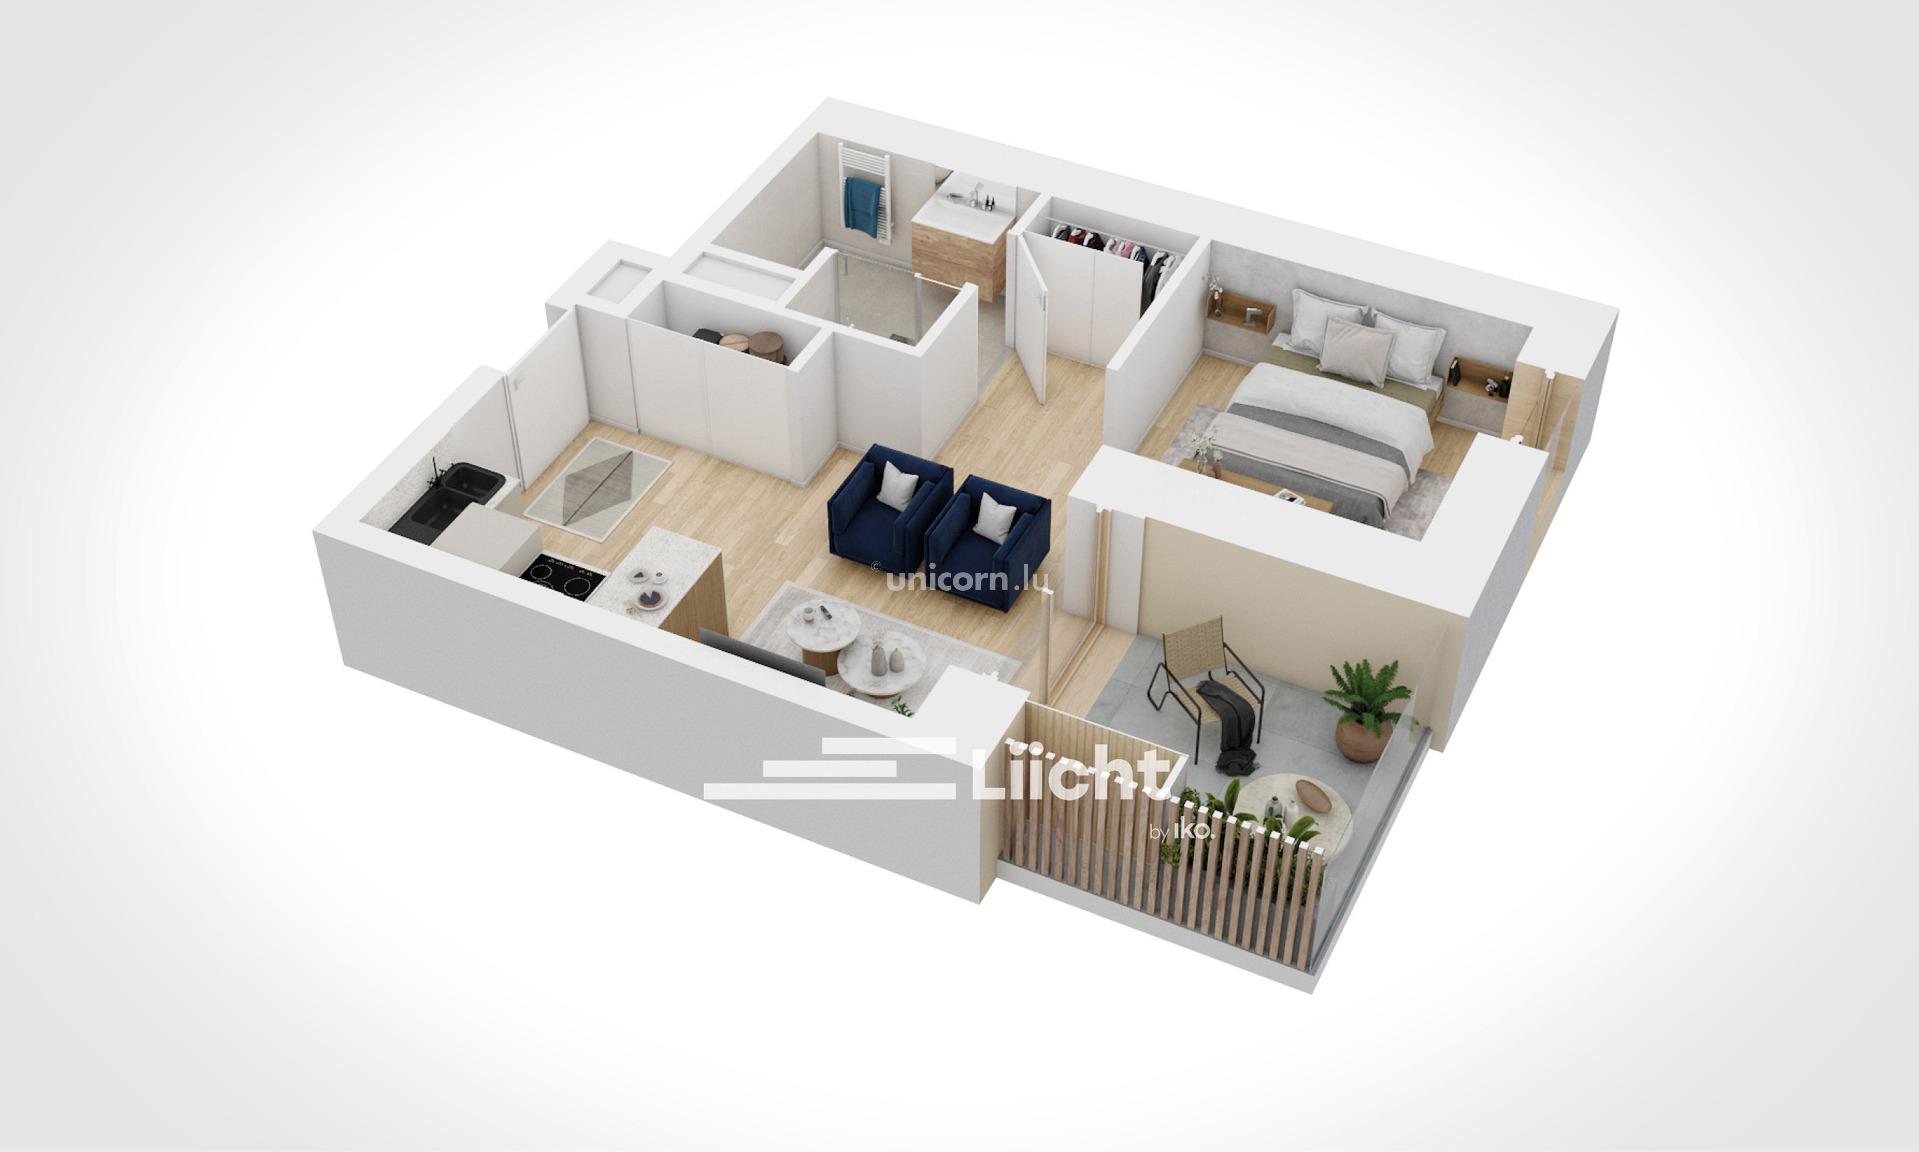 Appartement en vente à Esch-Sur-Alzette  - 33.07m²